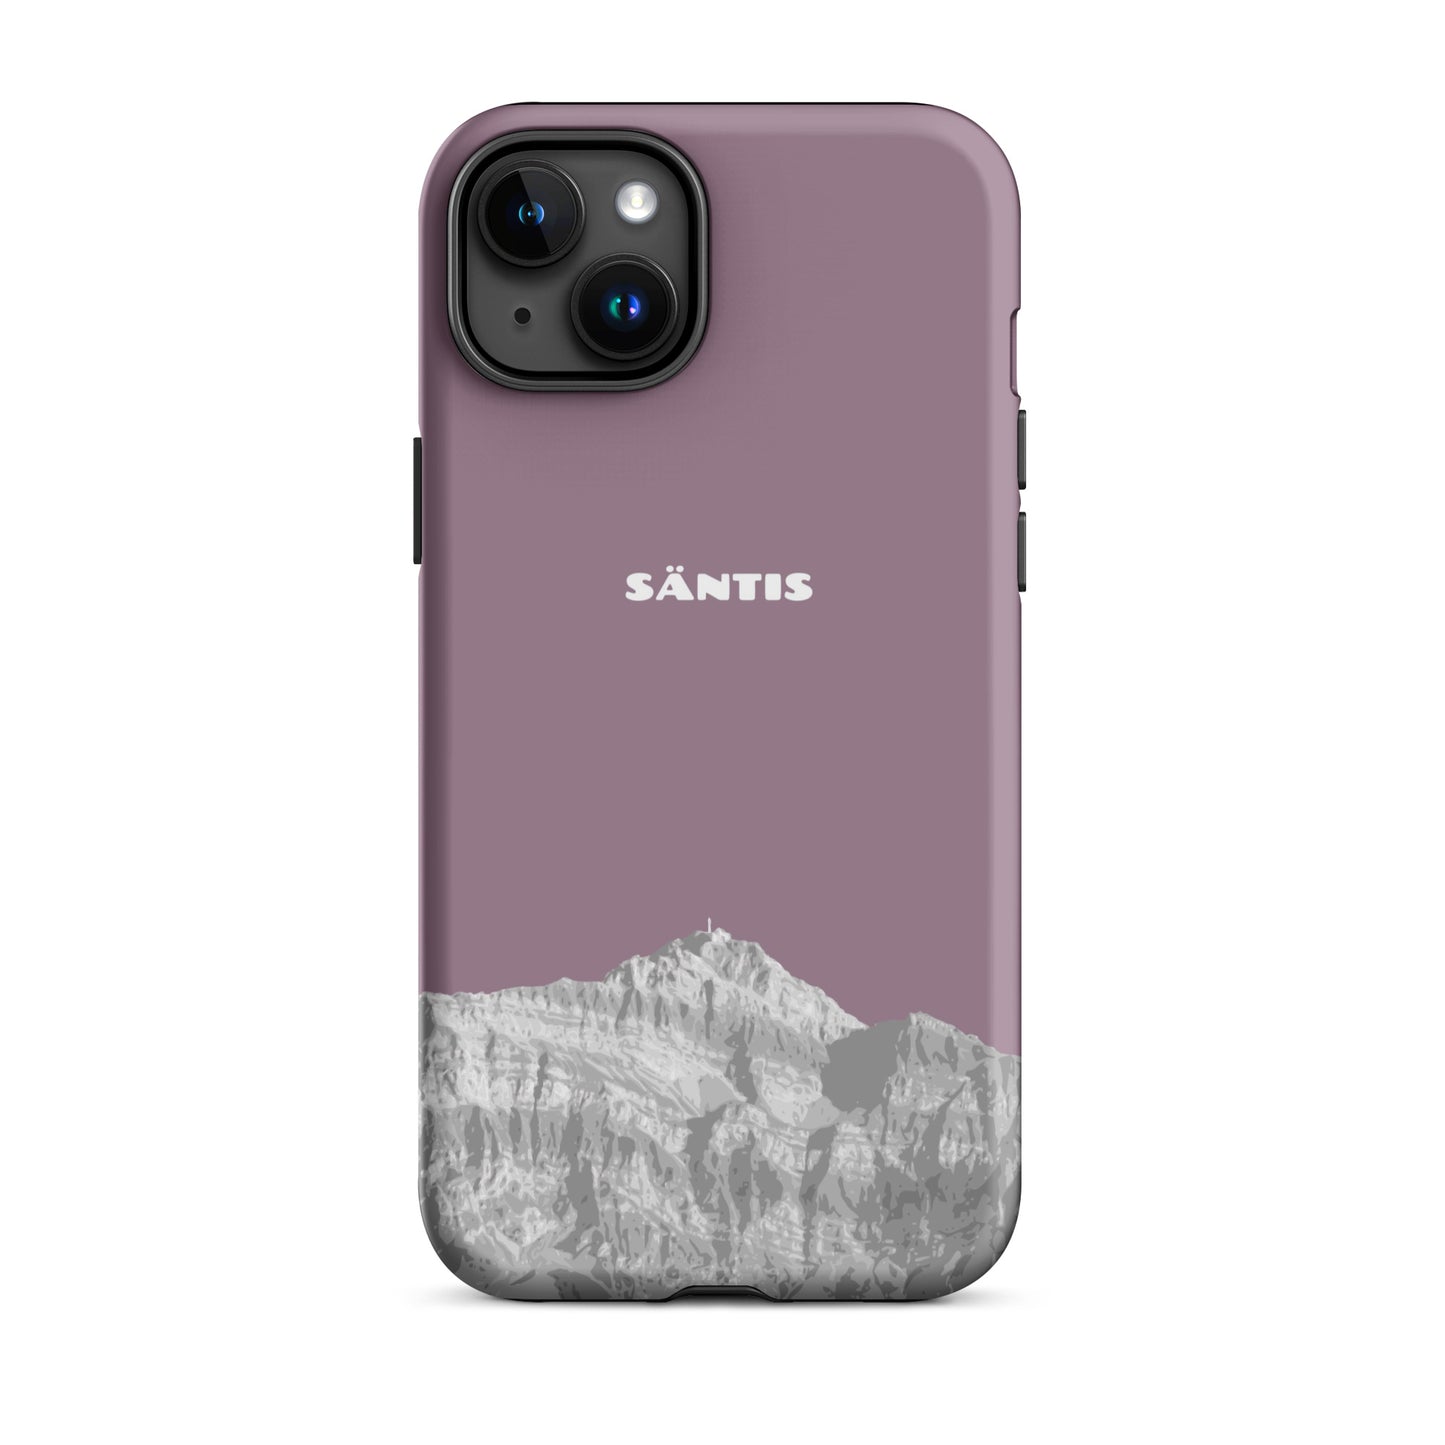 Hülle für das iPhone 15 Plus von Apple in der Farbe Pastellviolett, dass den Säntis im Alpstein zeigt.